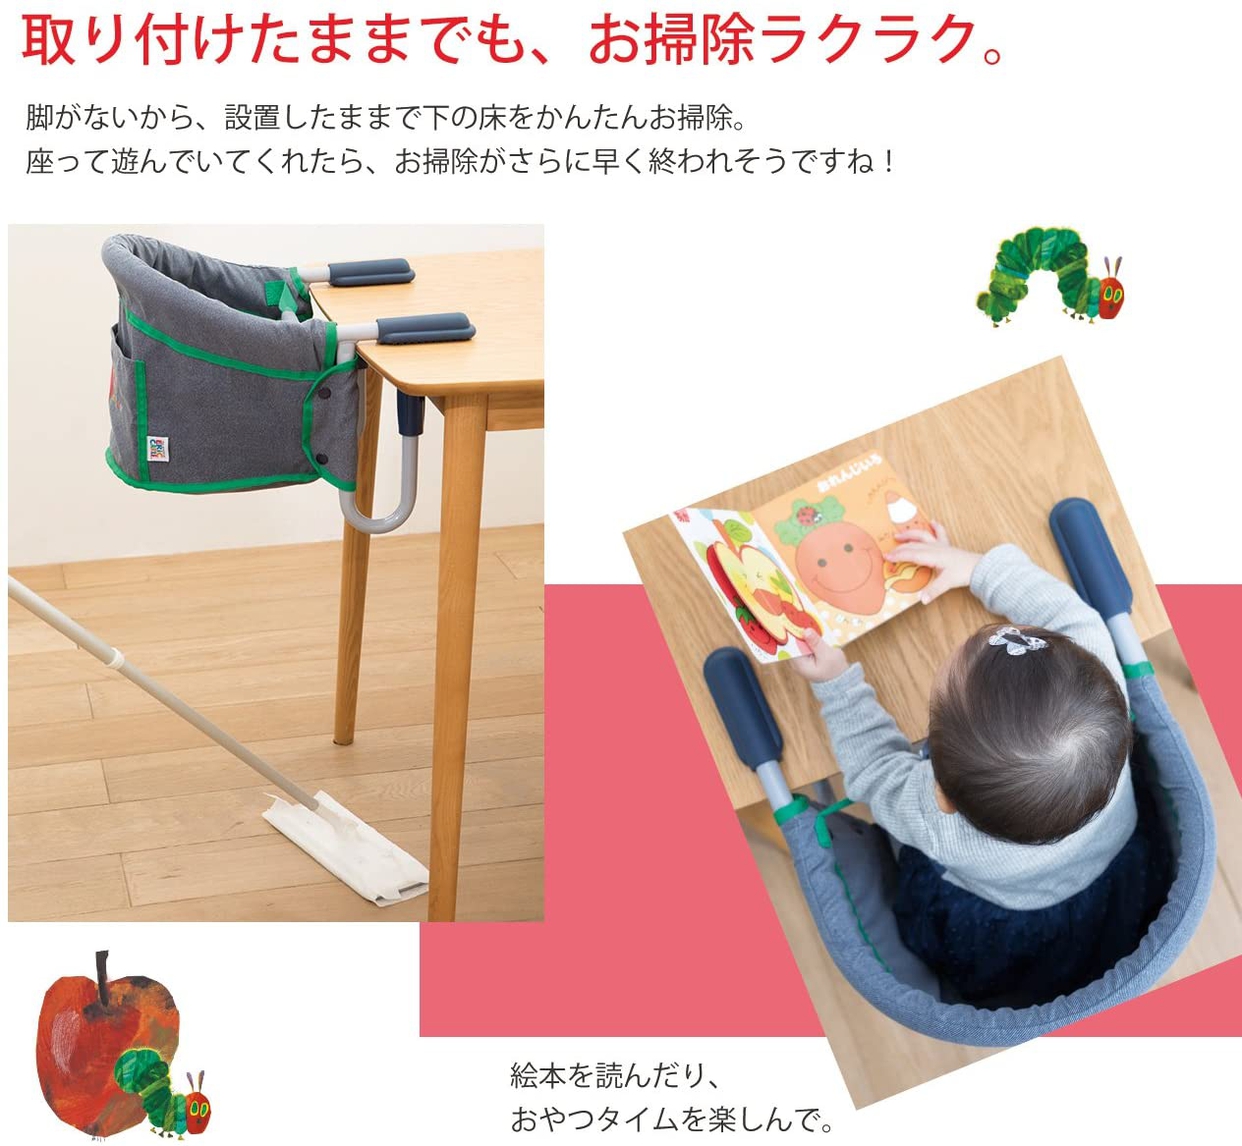 日本育児(nihon ikuji) はらぺこあおむし テーブルチェアの商品画像6 